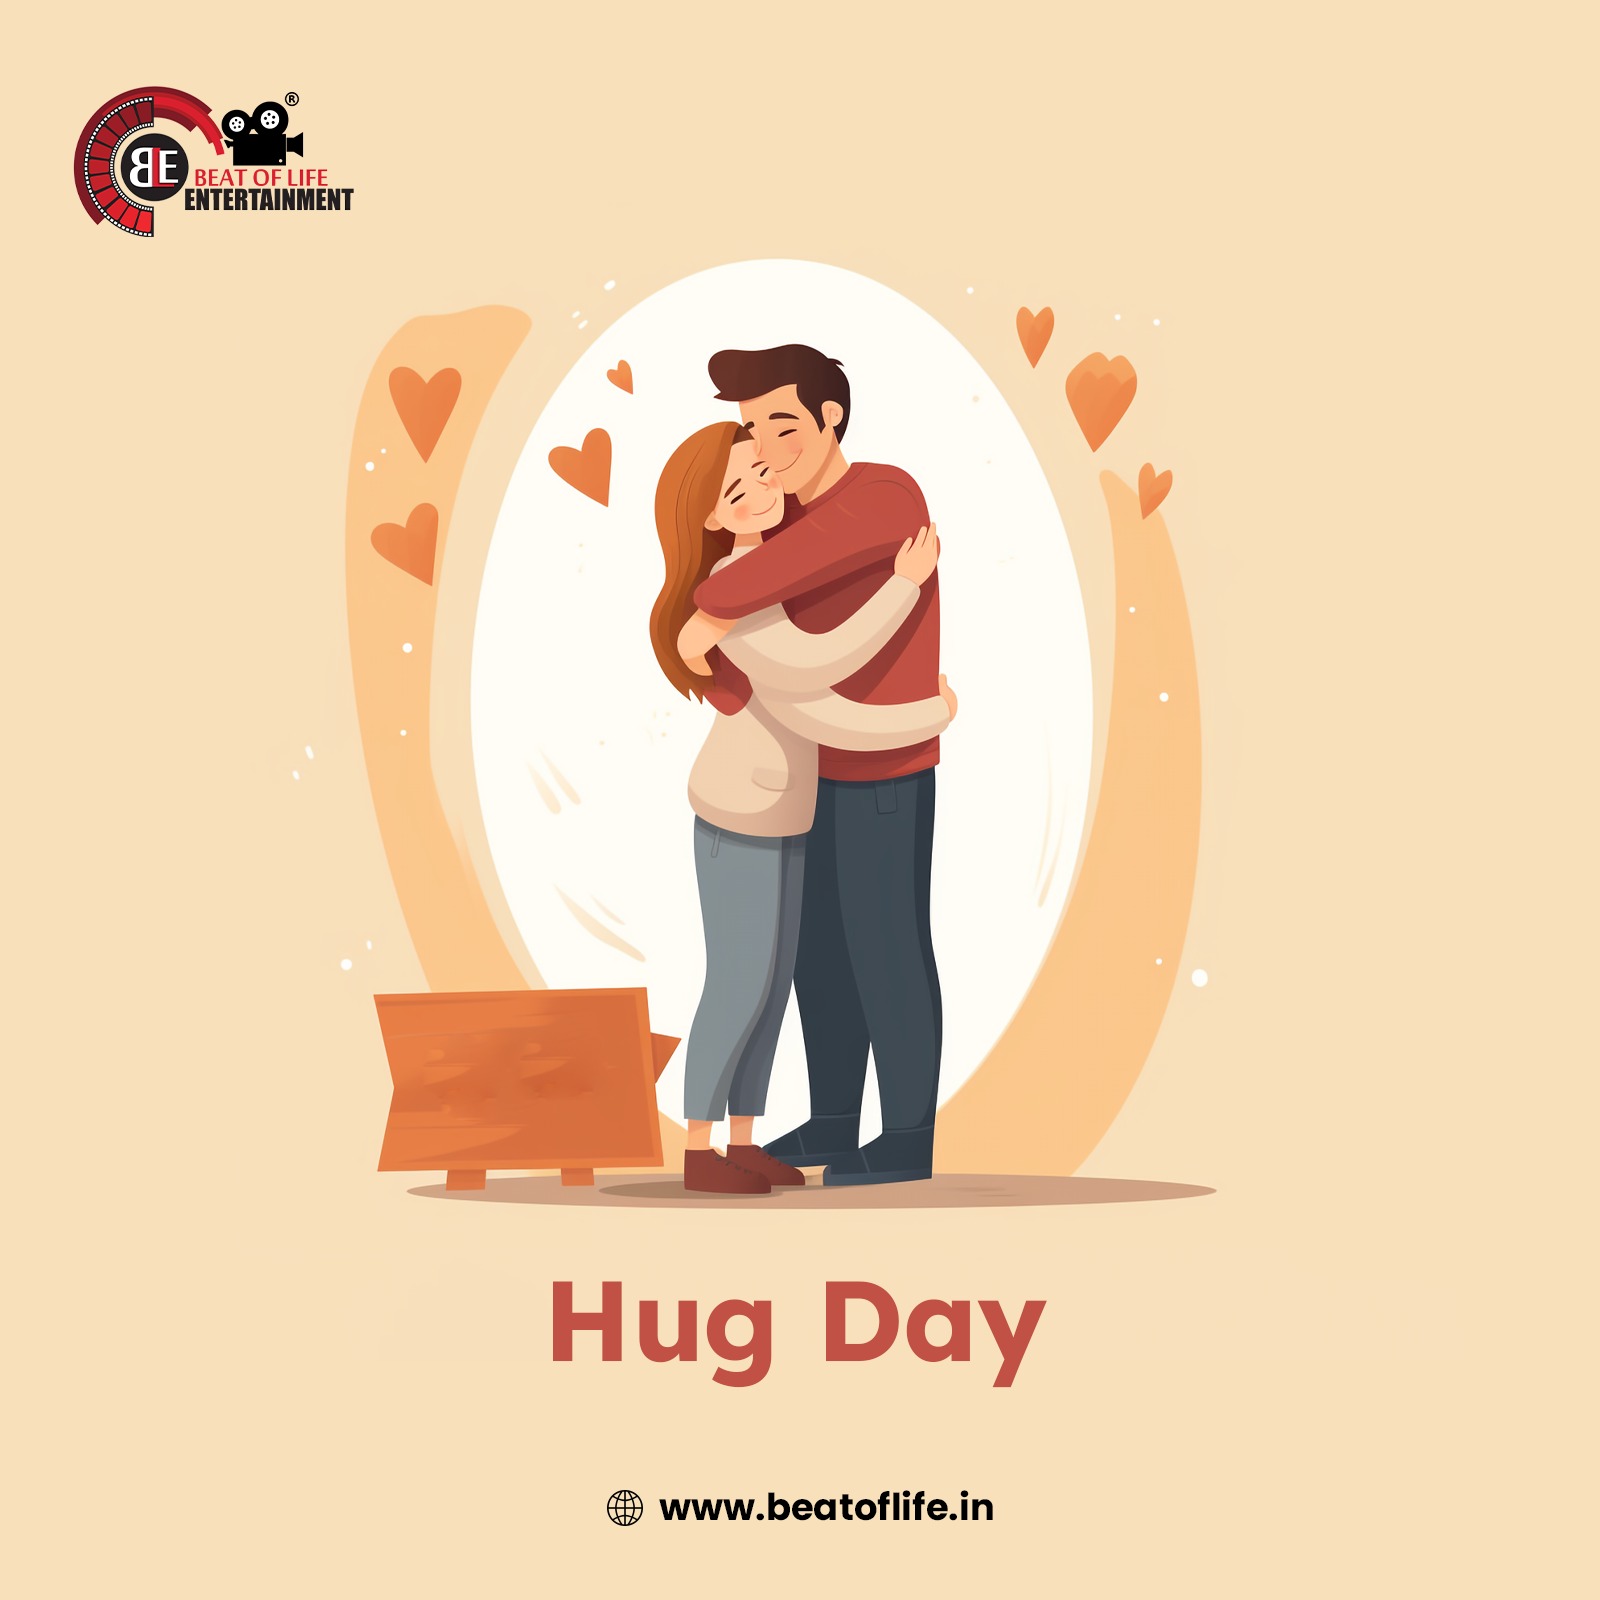 Hug day